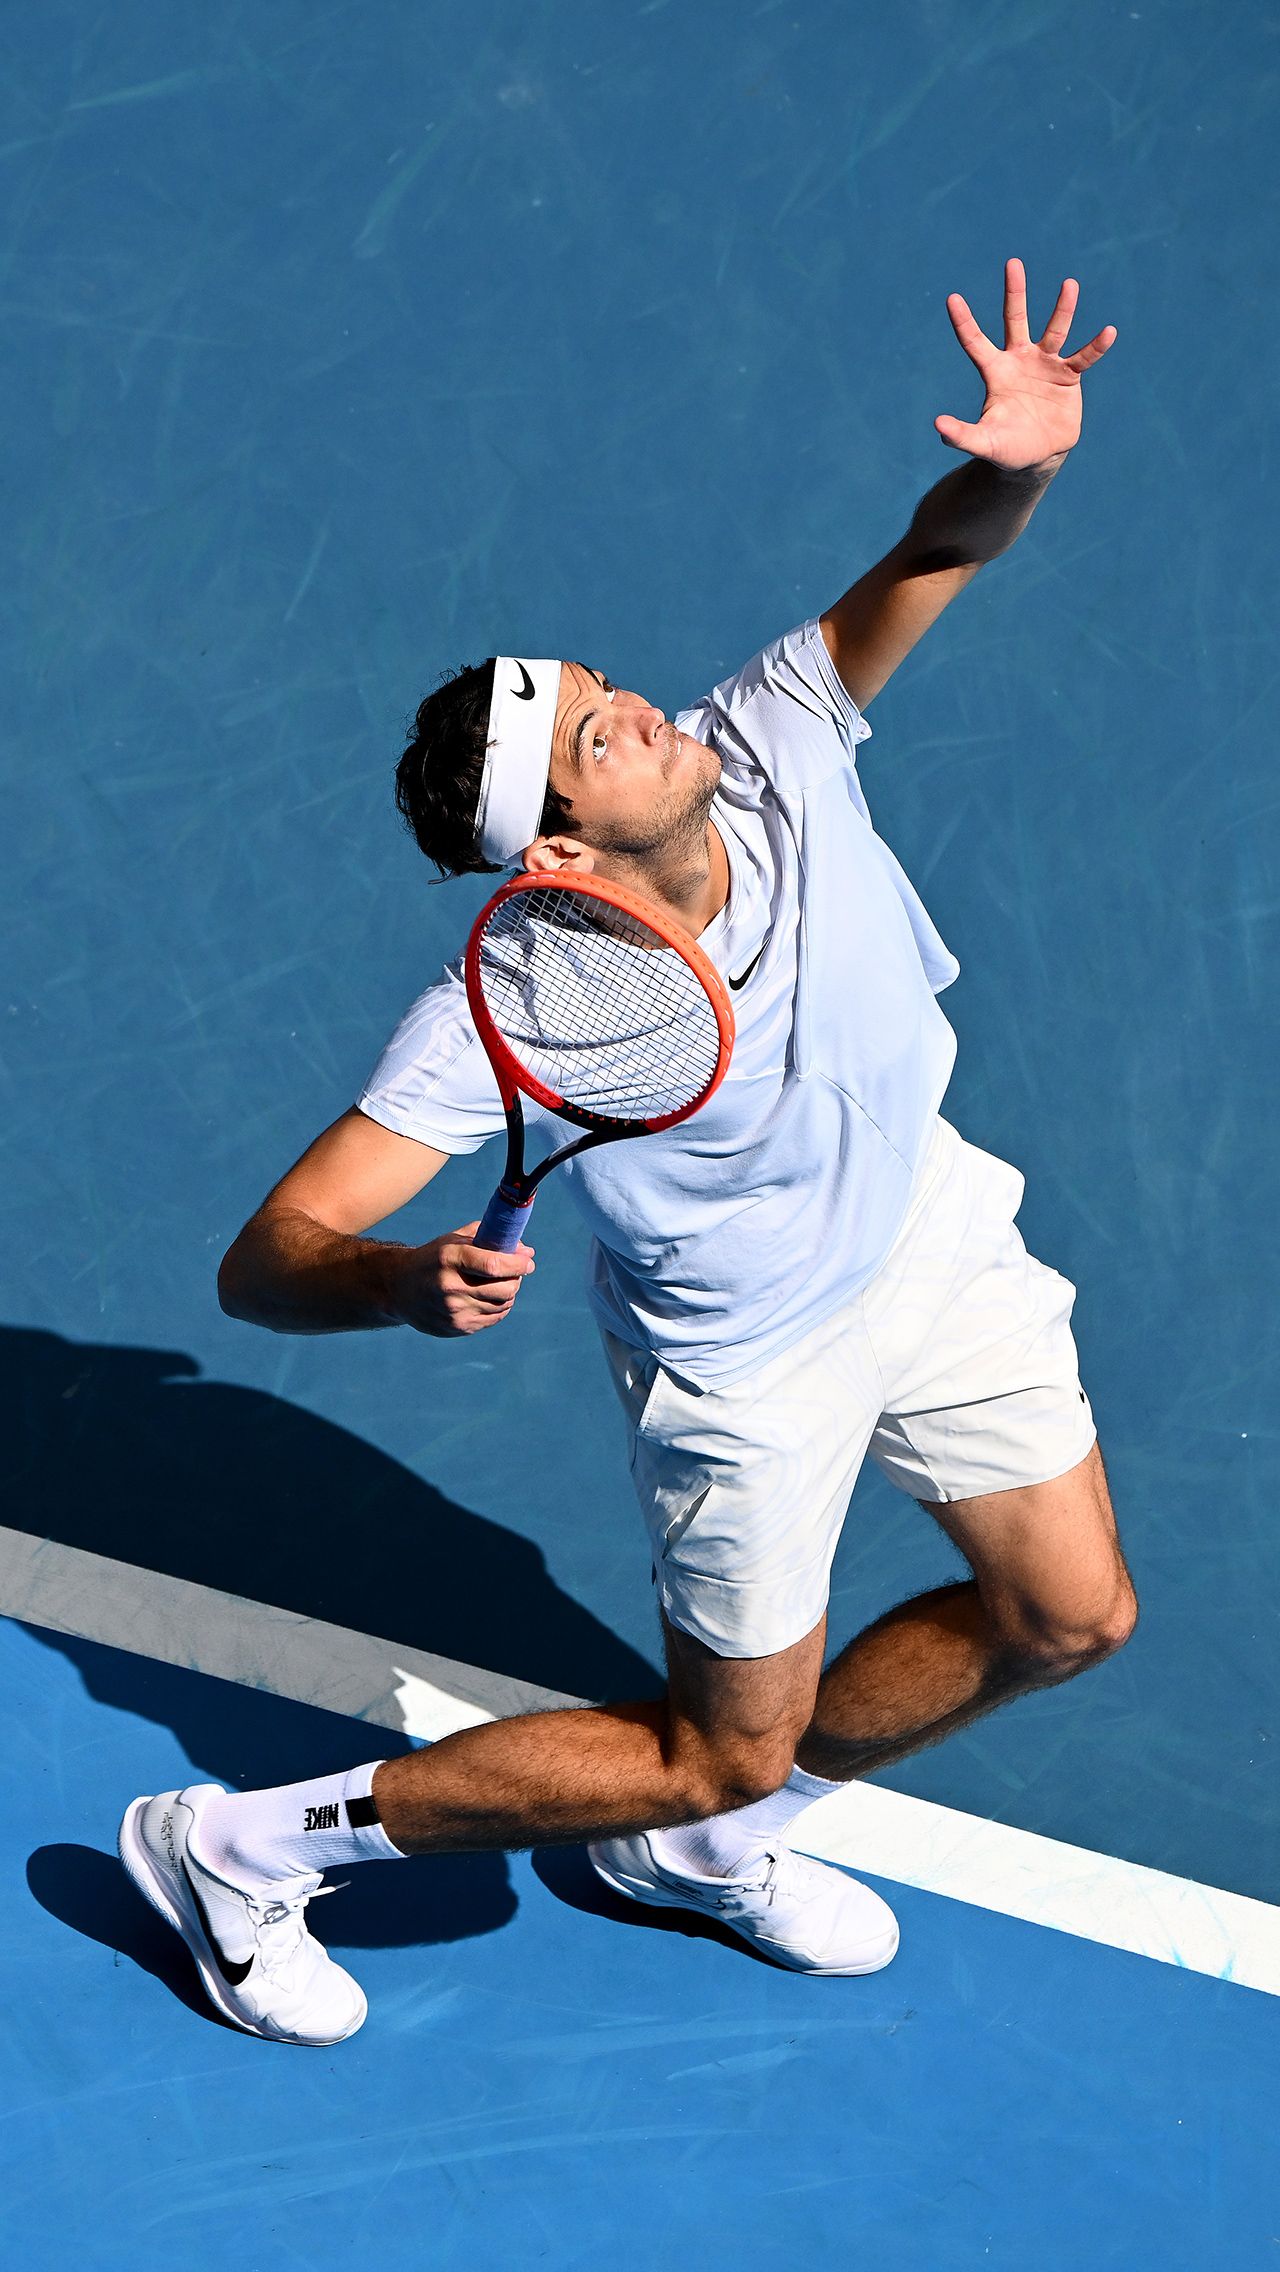 Алексей Попырин уже вышел в третий круг Australian Open. Во втором раунде он в пяти сетах обыграл восьмого сеяного Тейлора Фритца — 6:7, 7:6, 6:4, 6:7, 6:2.